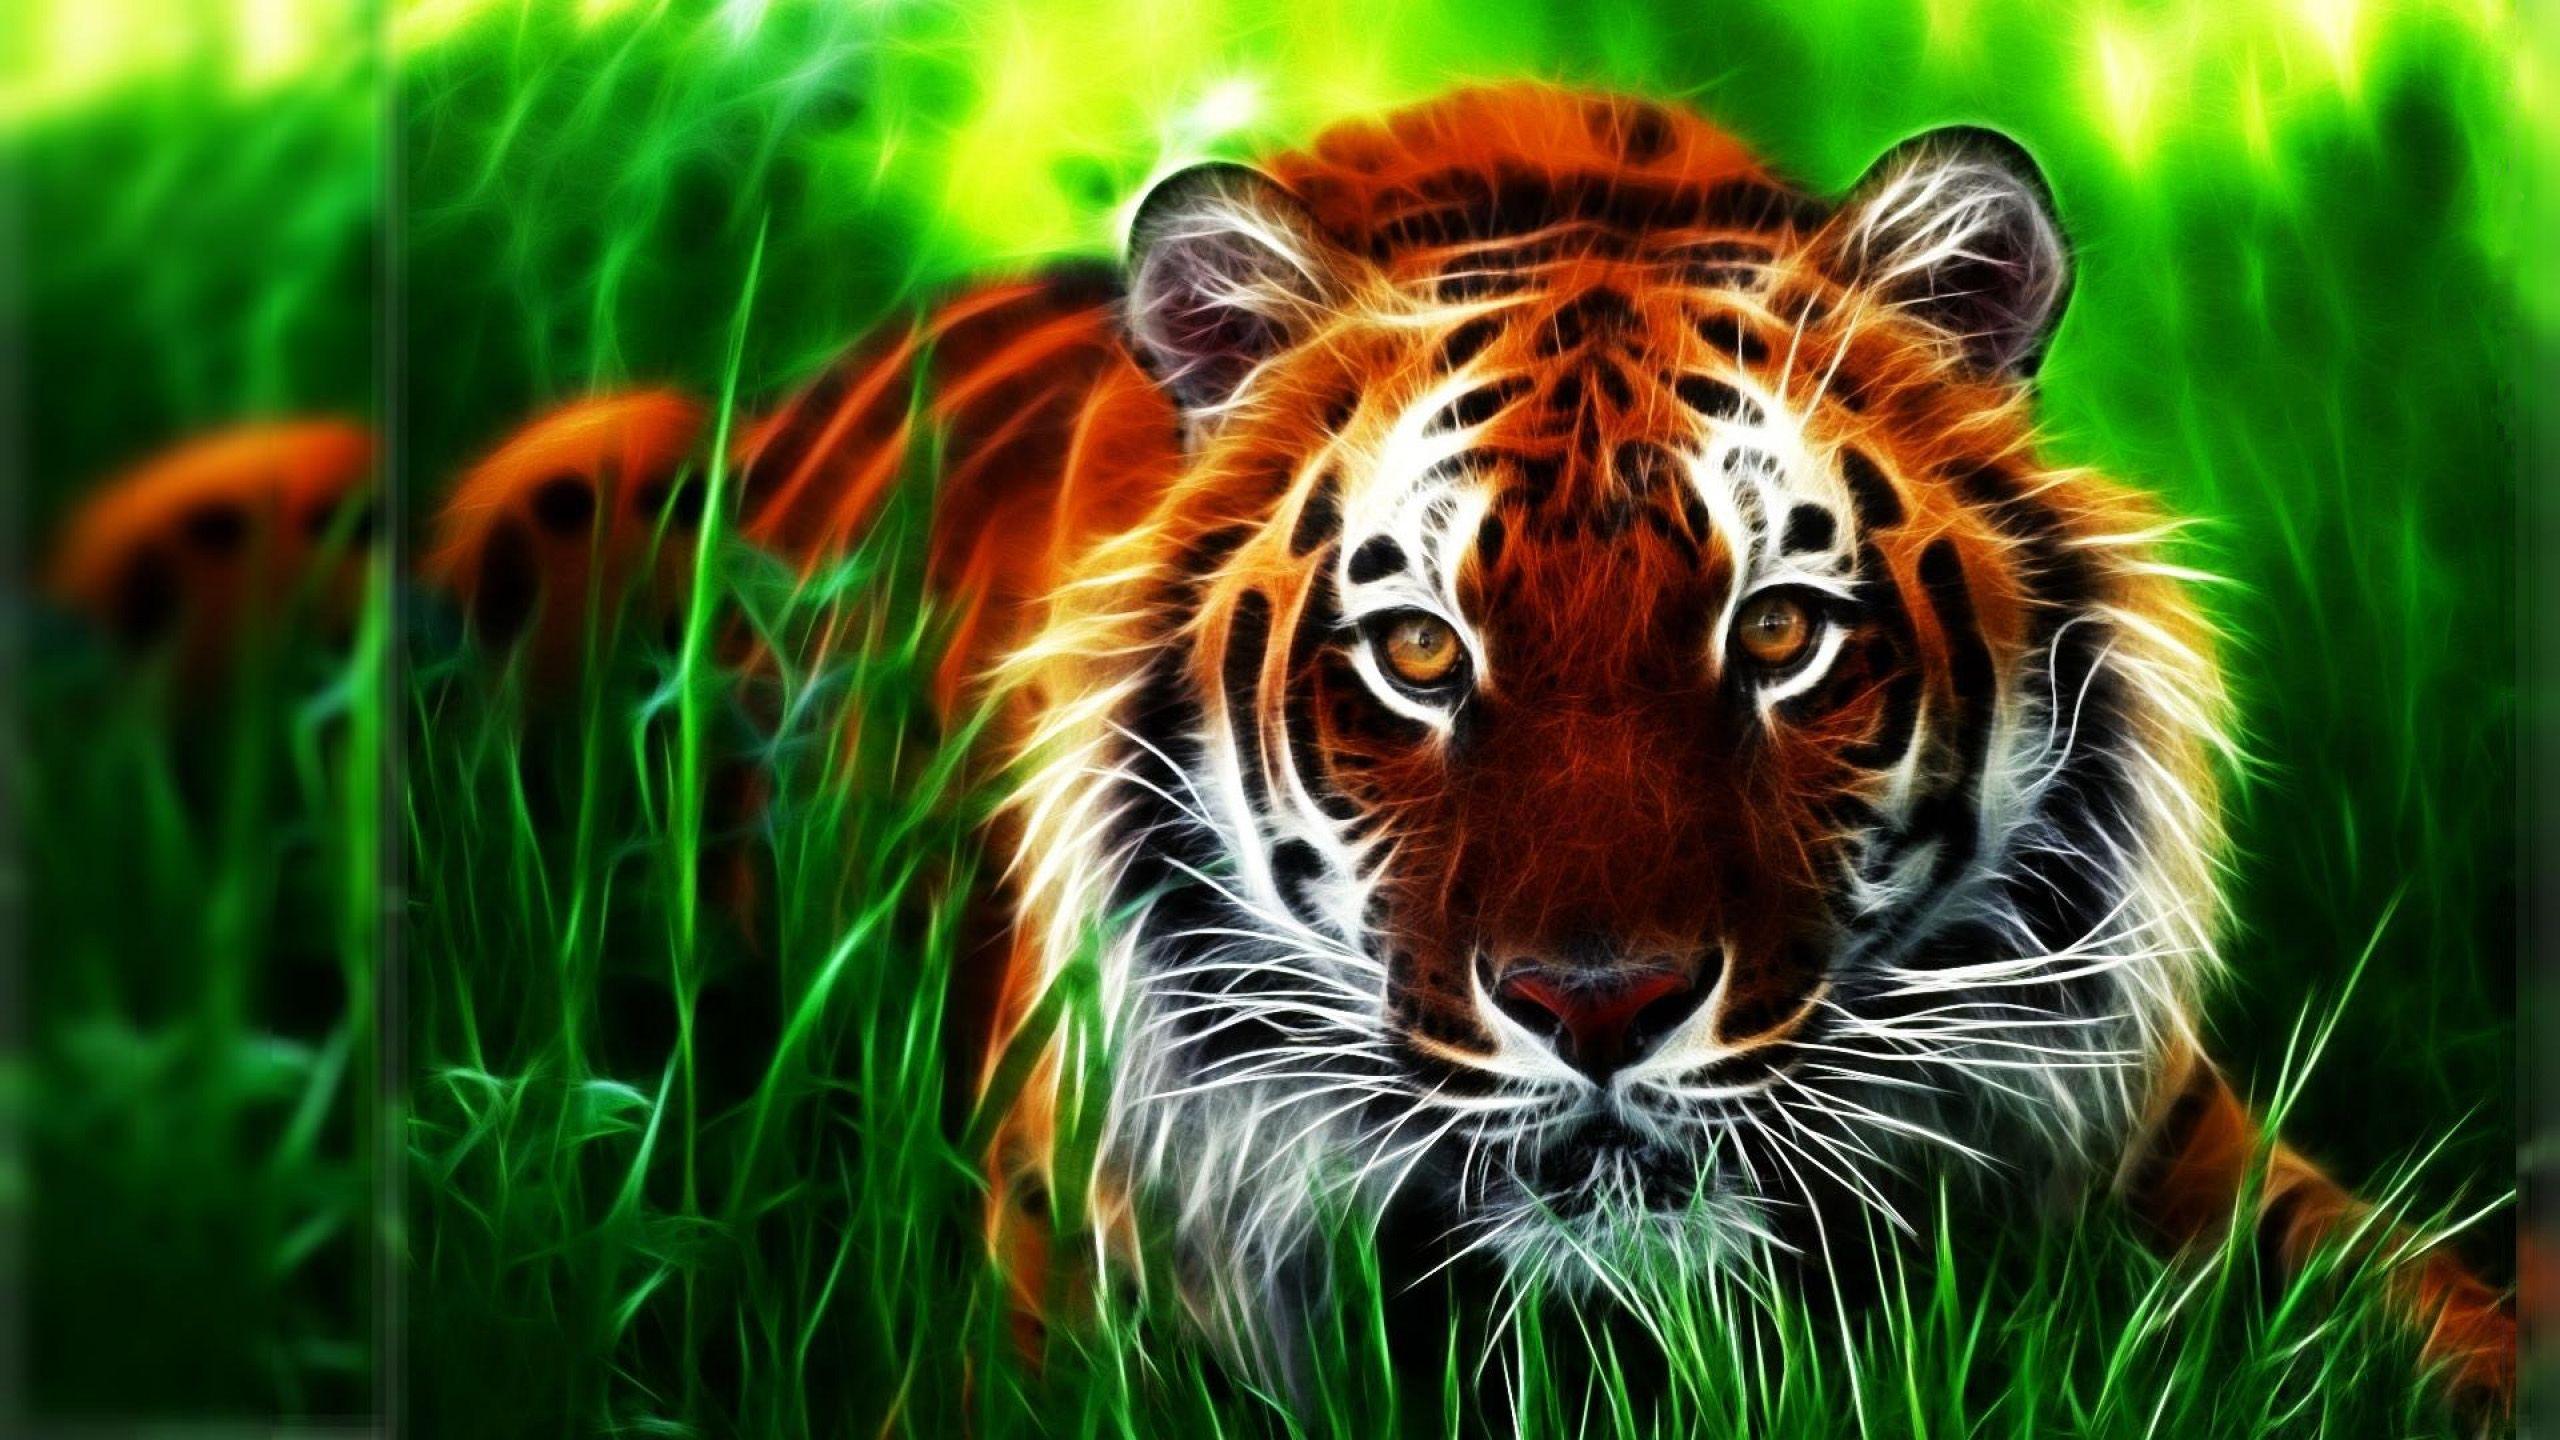 Tiger 3D Computer Digital HD Wallpaper 2560x1440, Wallpaper13.com